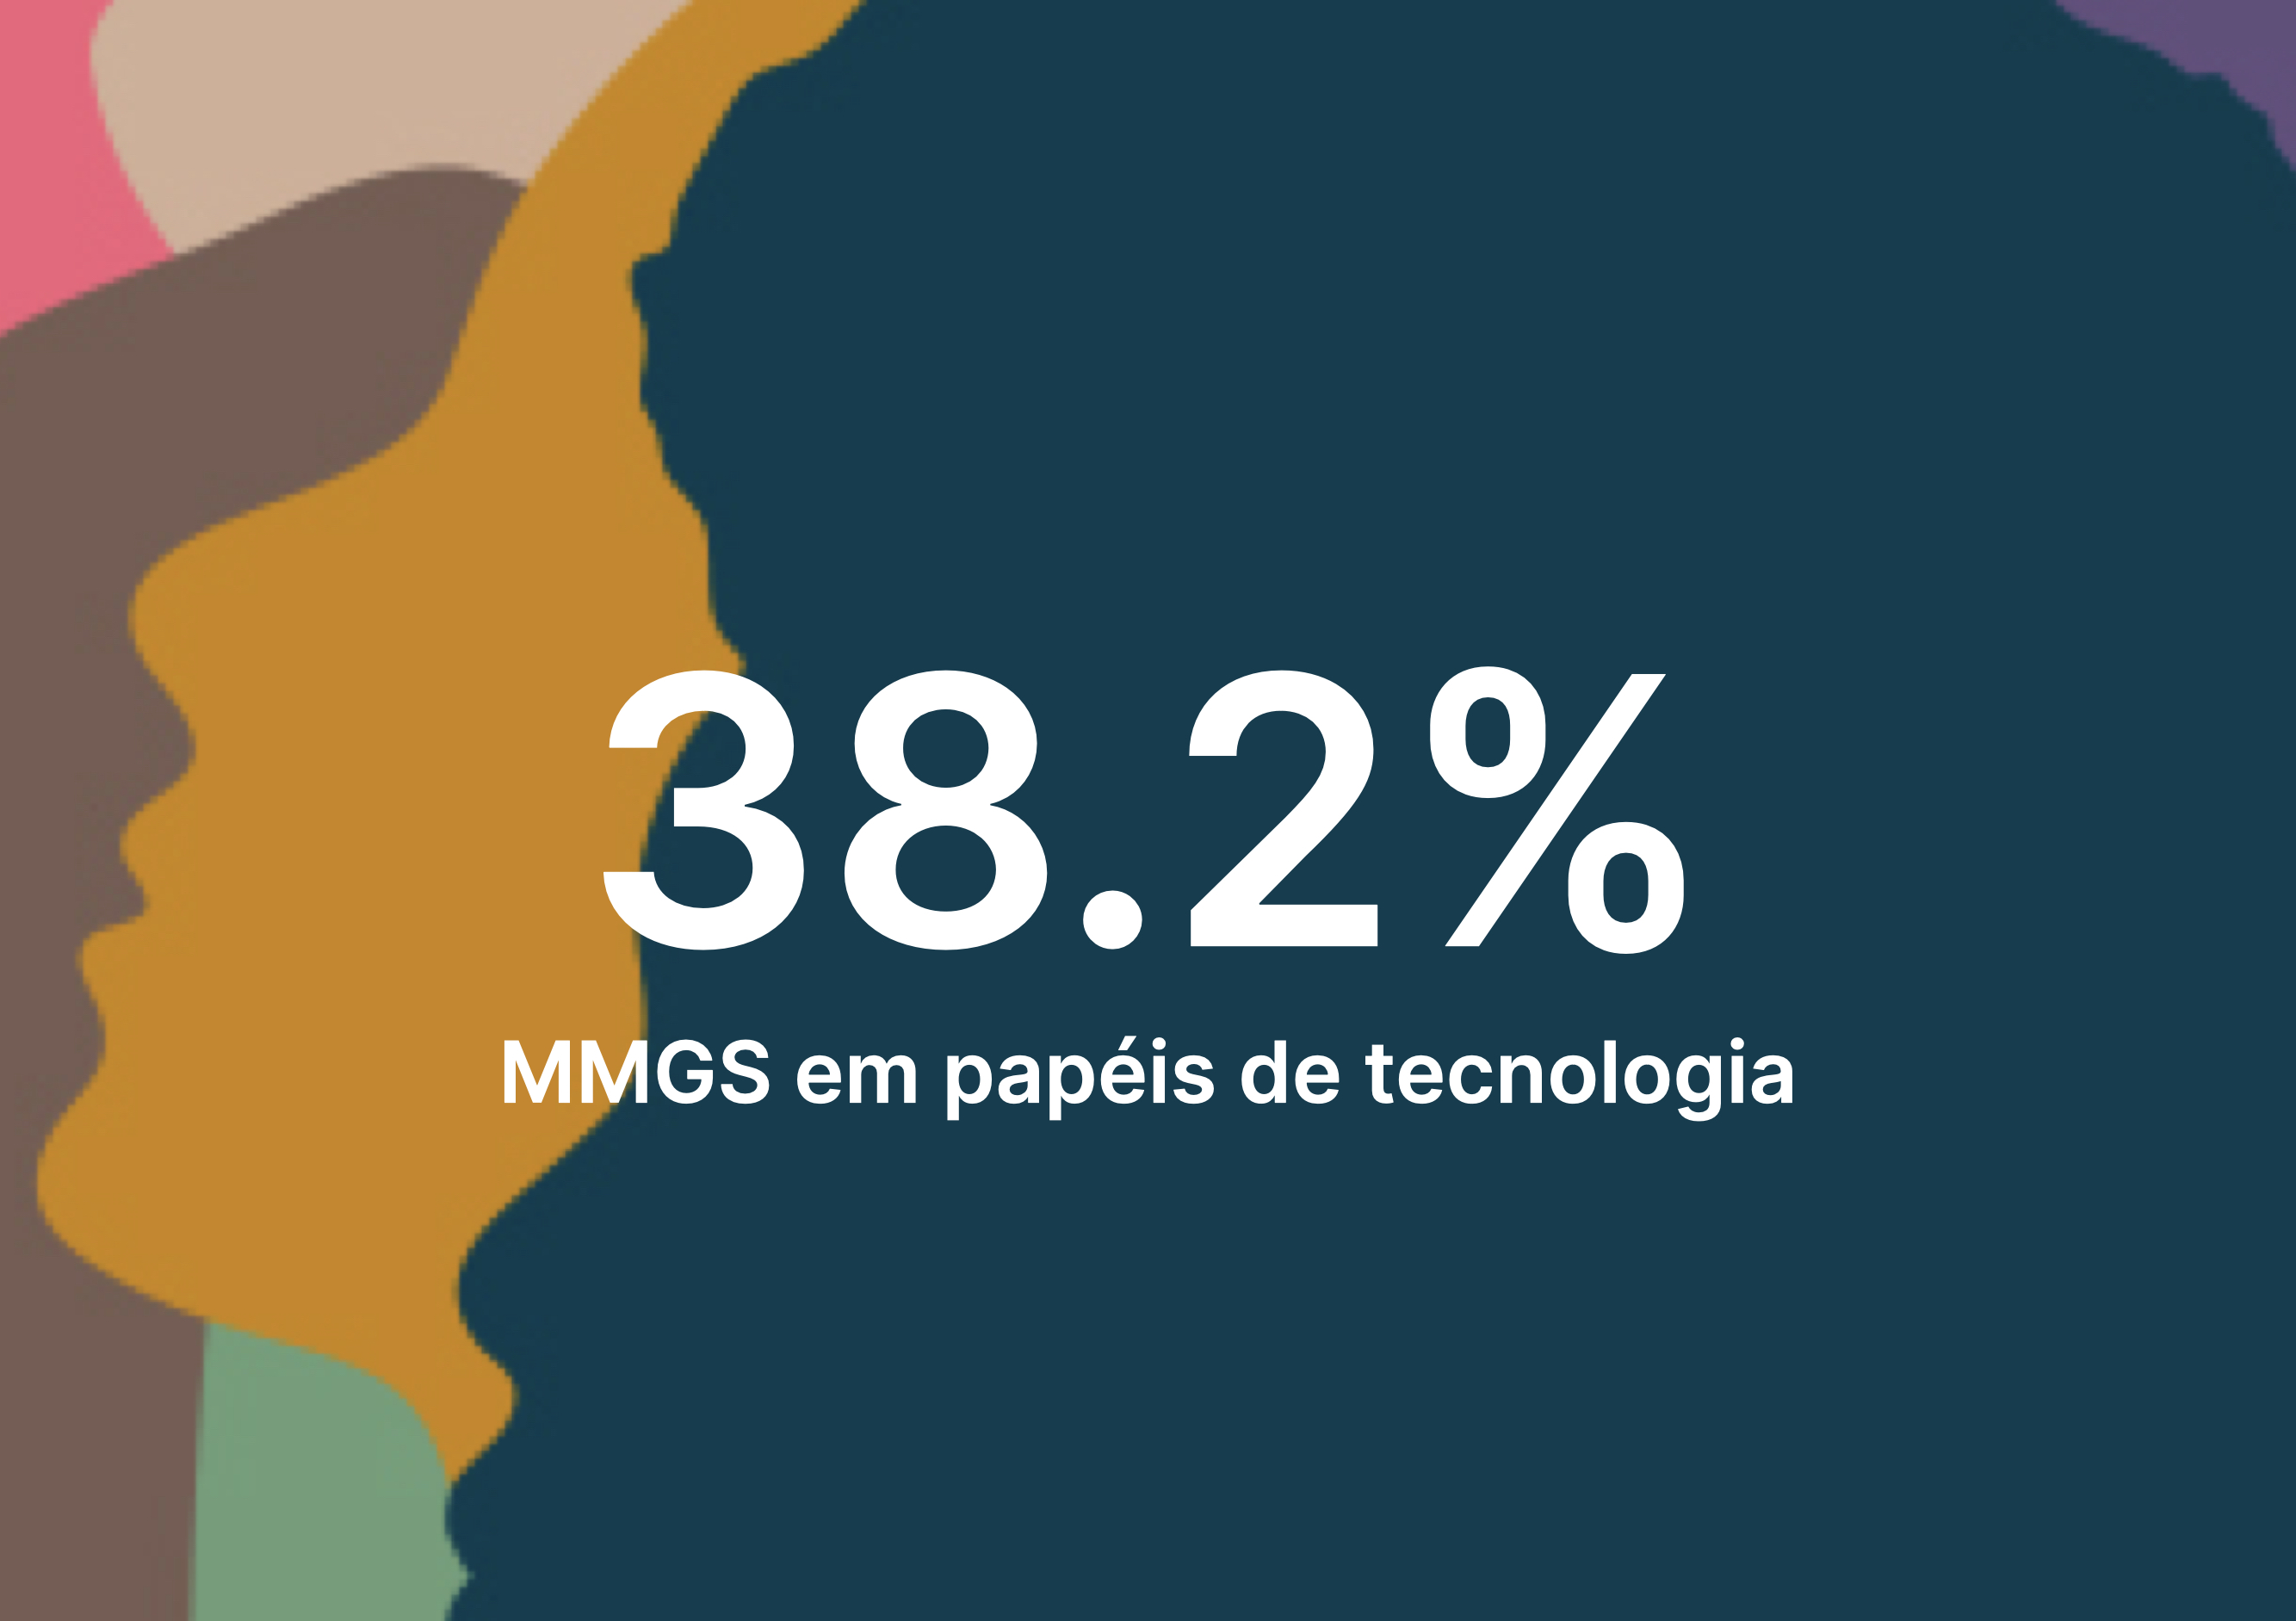 38.2% MMGS em papéis de tecnologia